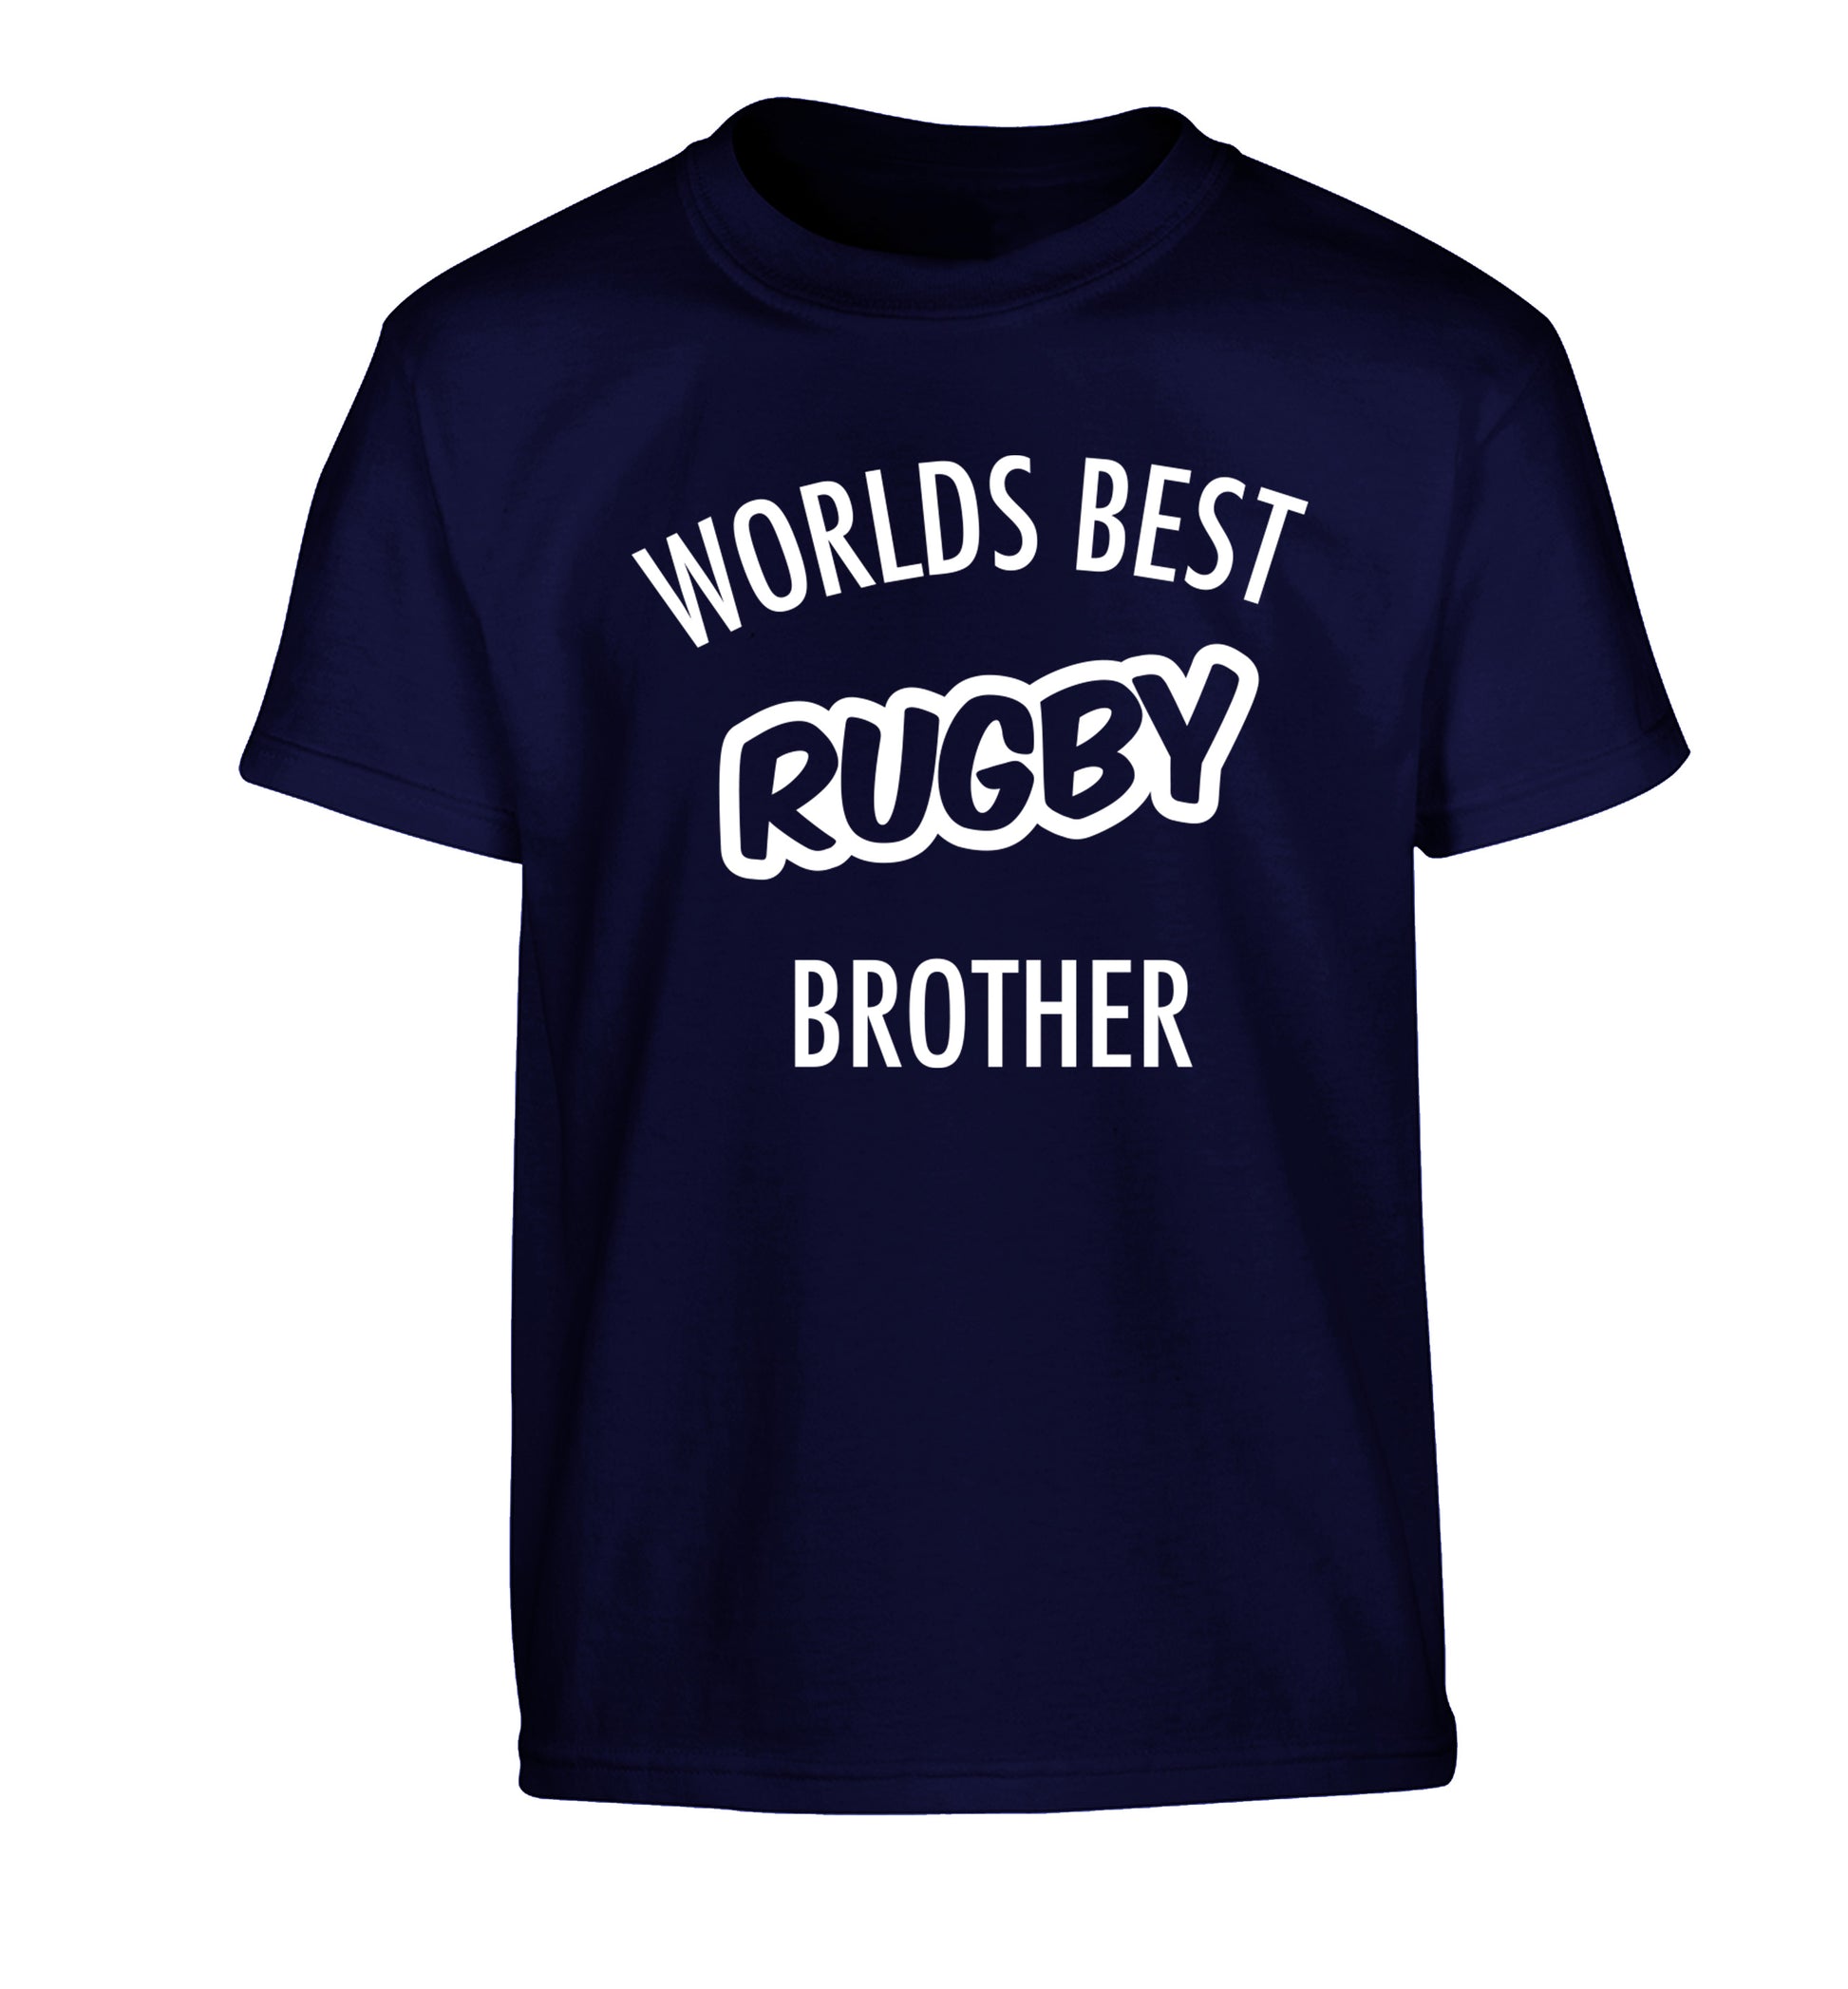 Worlds best rugby brother Children's navy Tshirt 12-13 Years